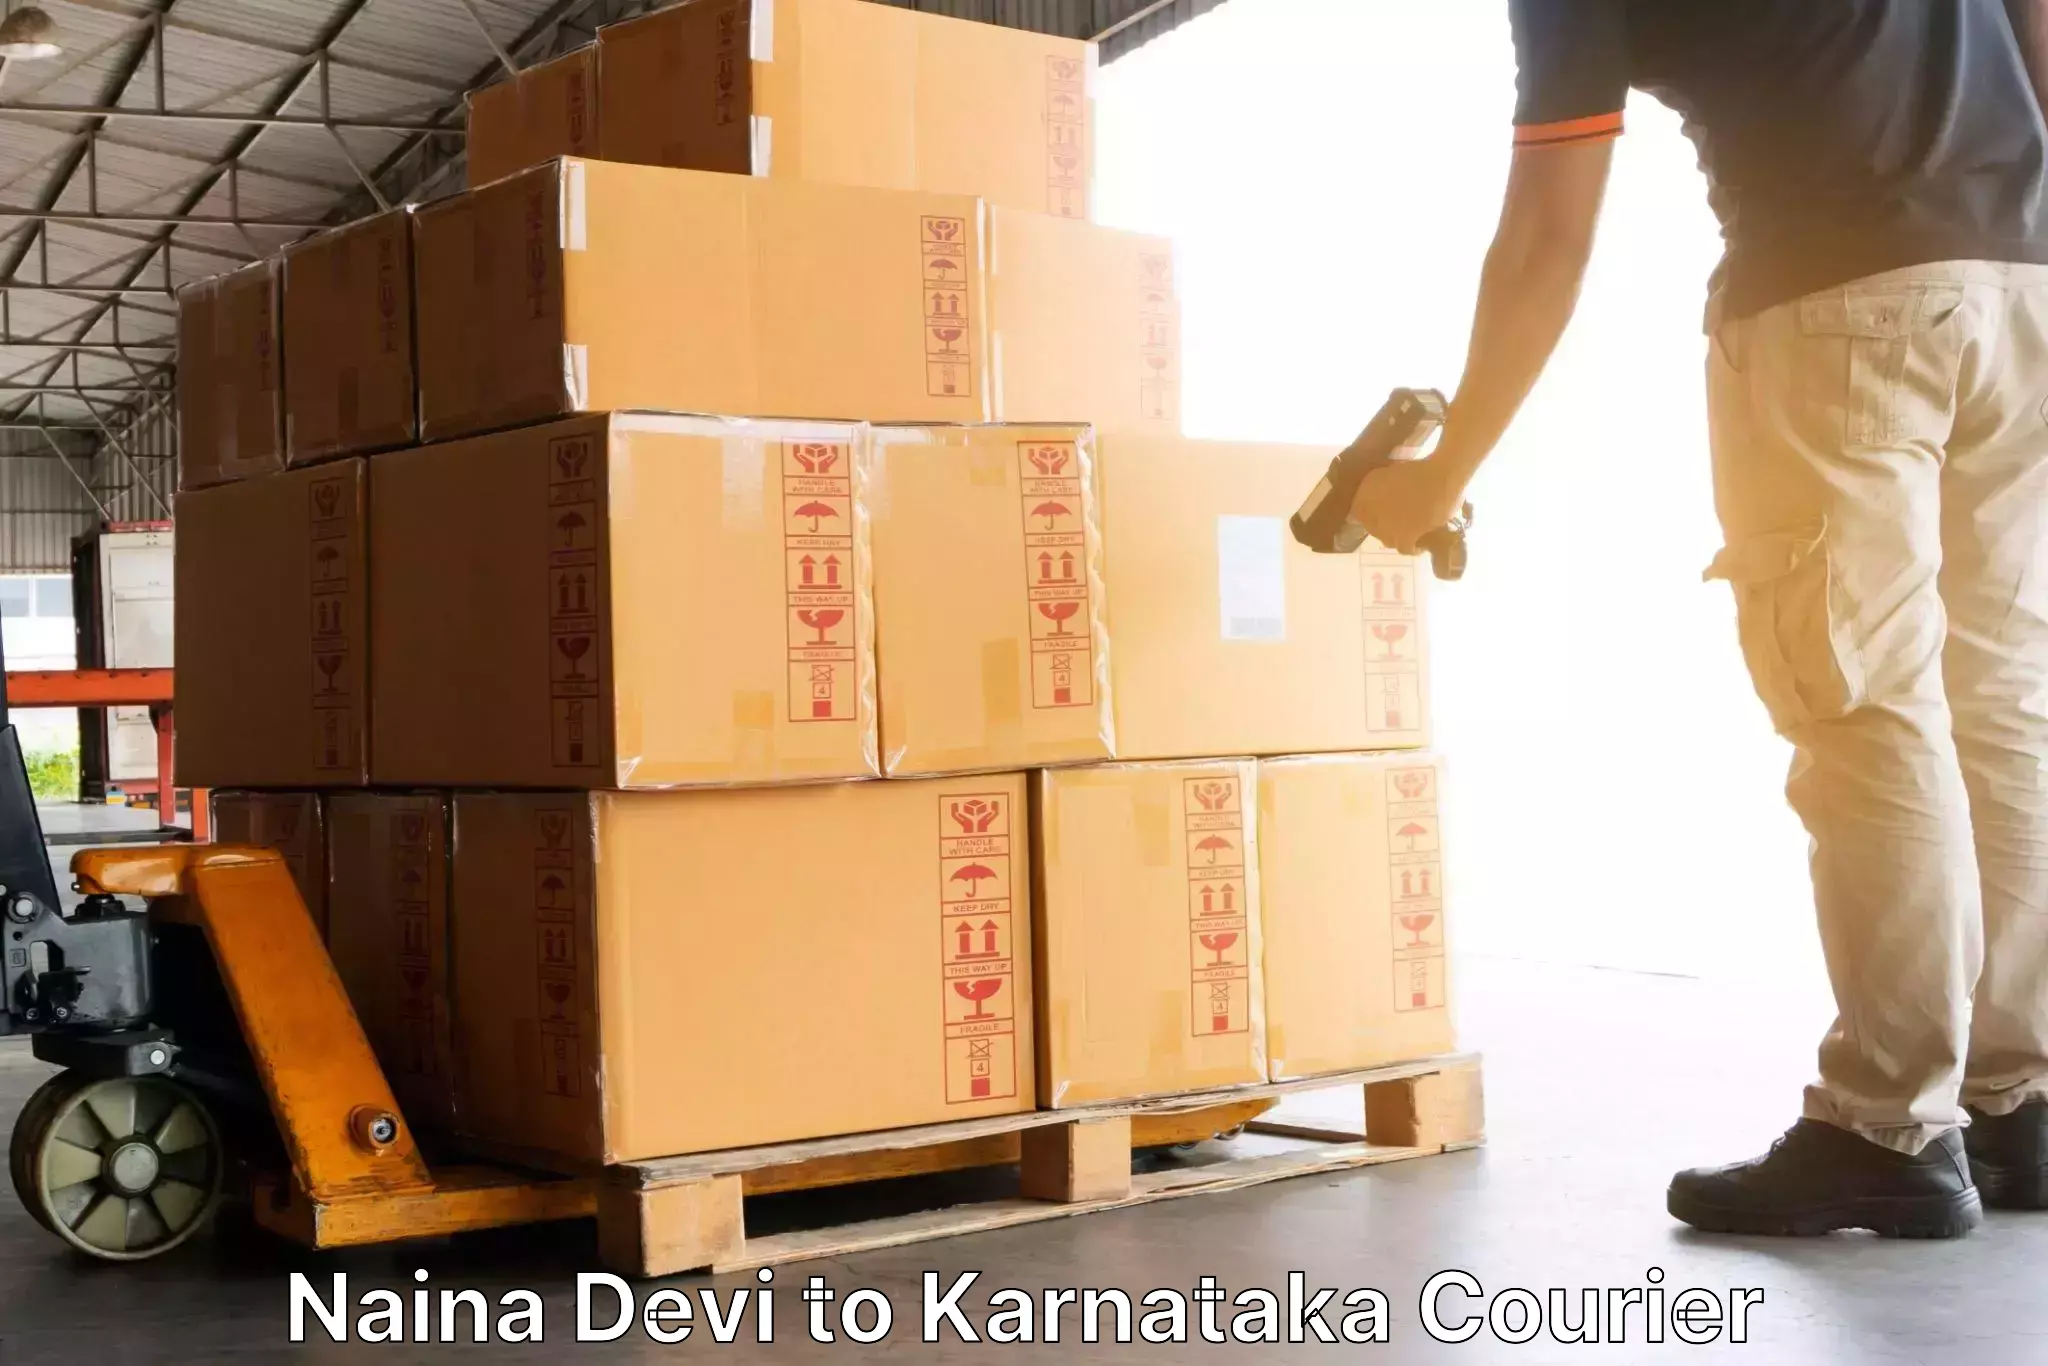 Courier service efficiency Naina Devi to Kadaba